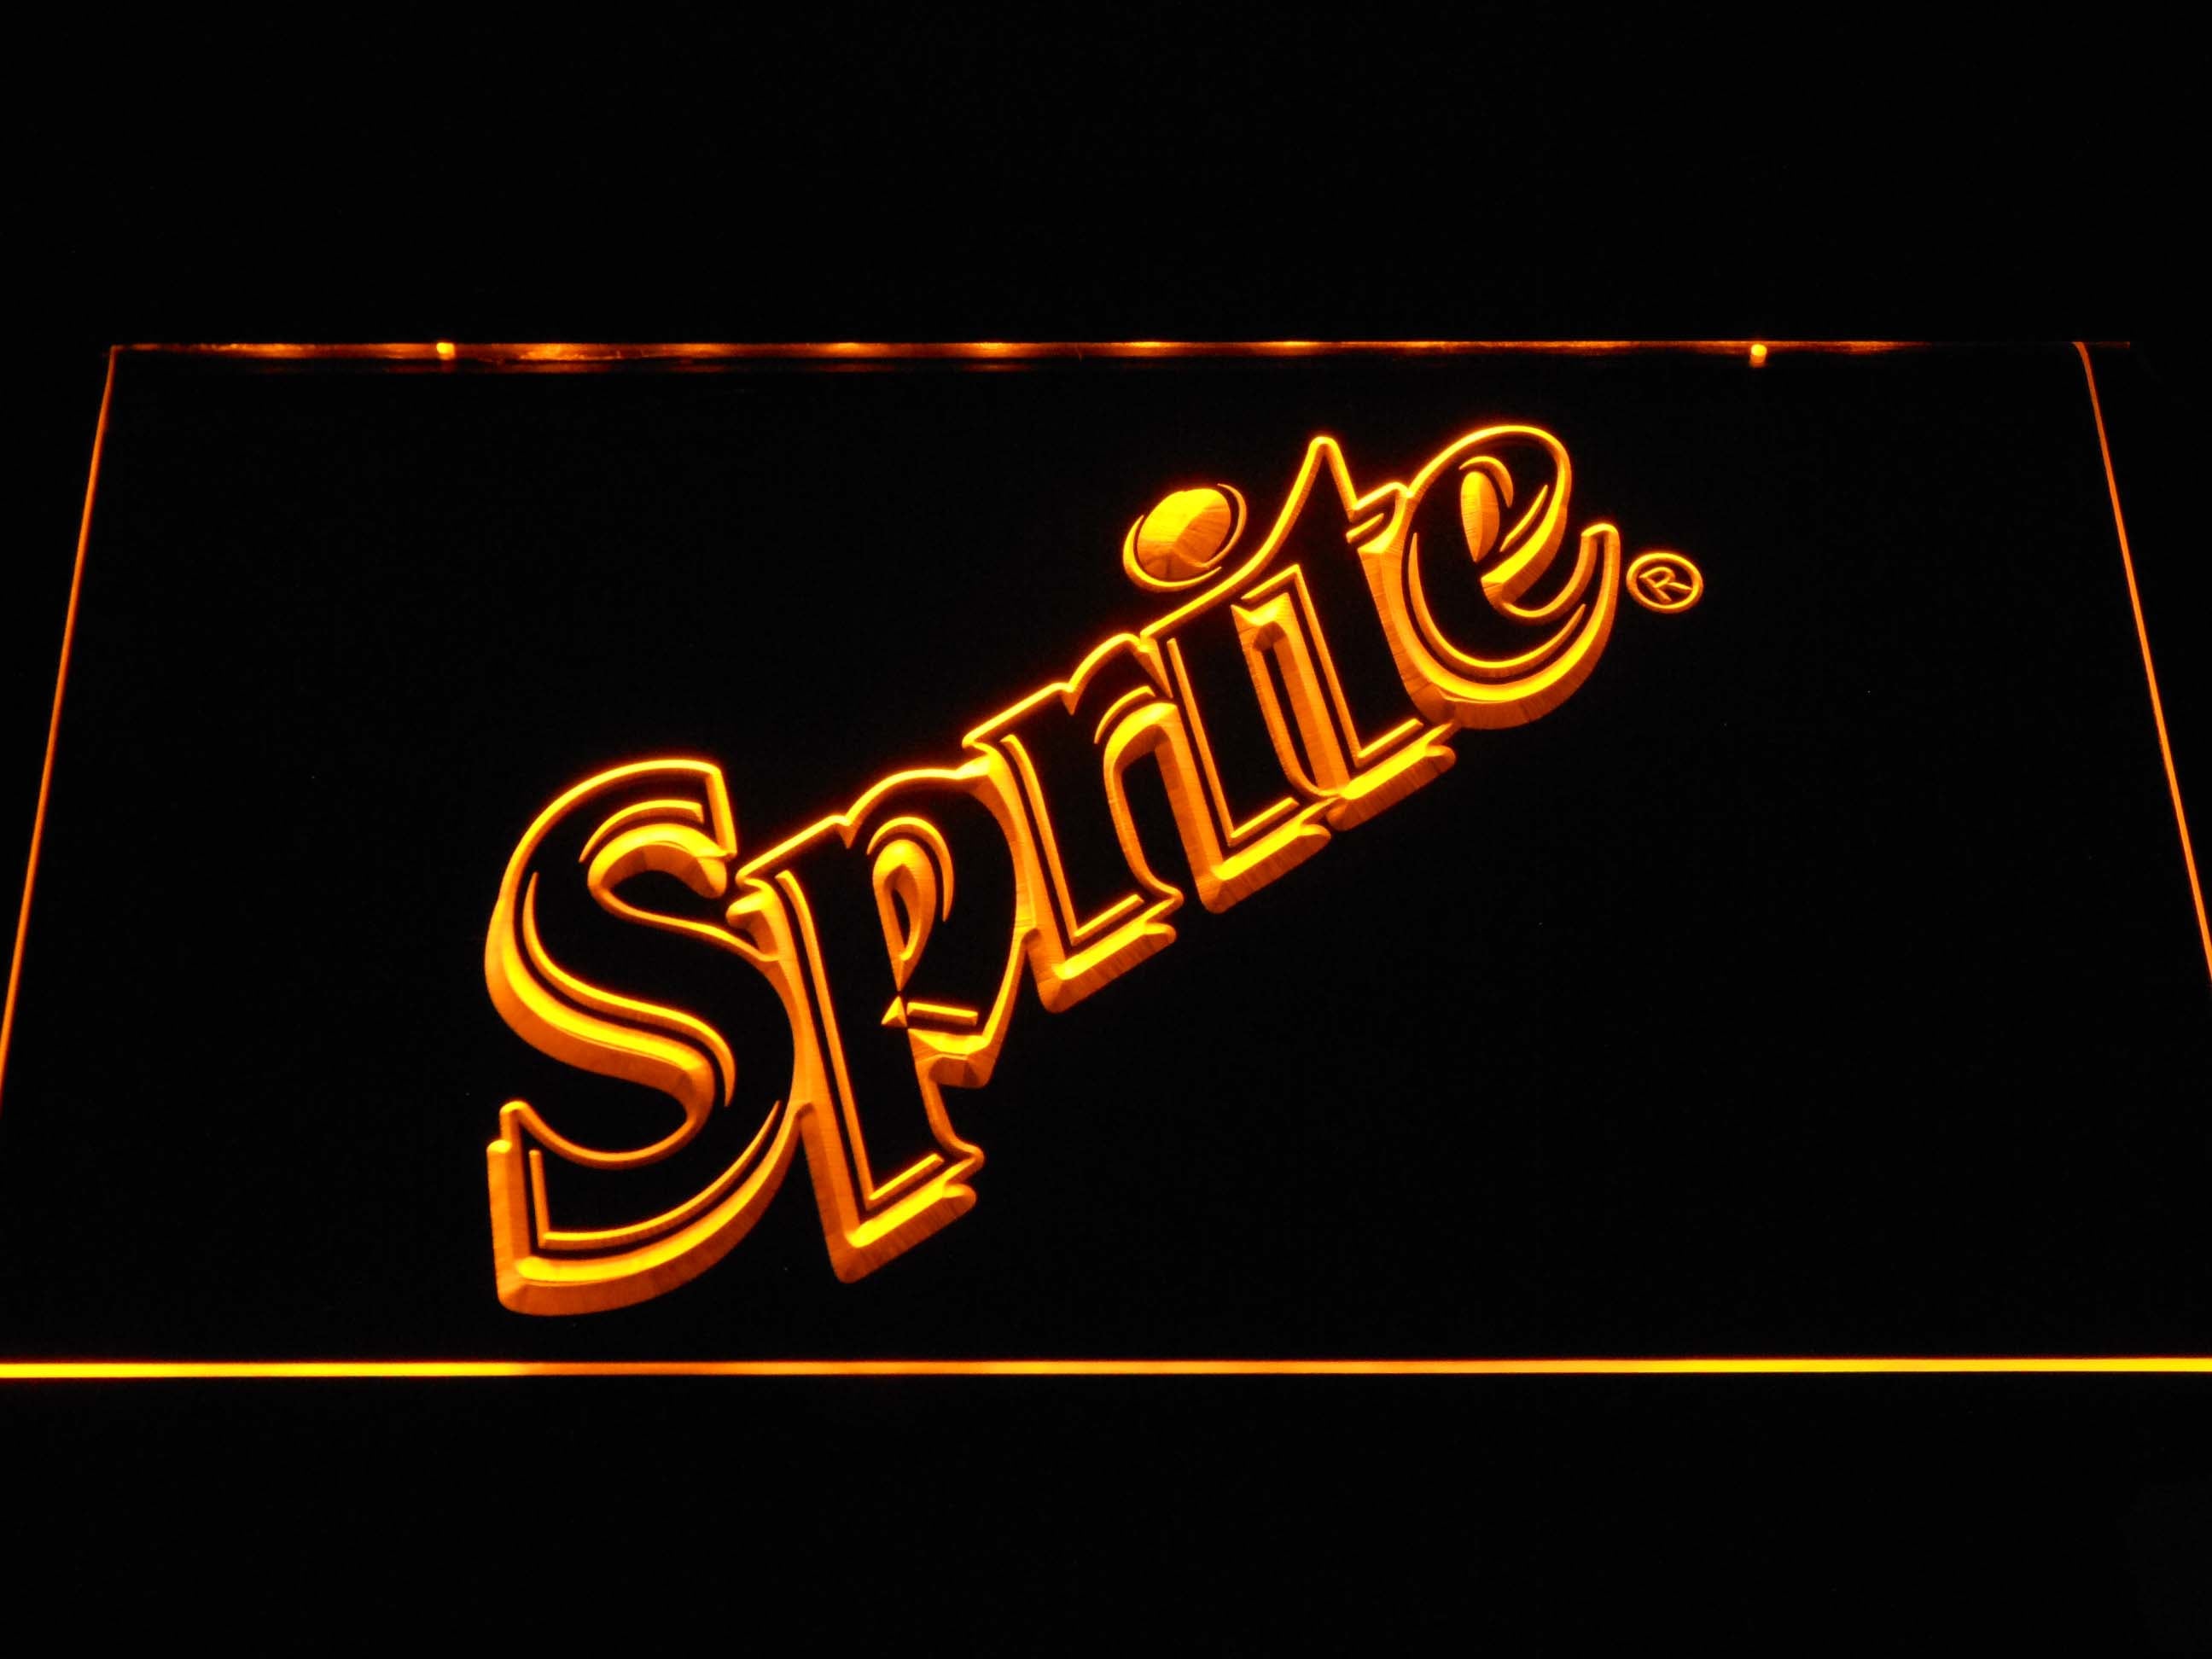 Sprite Soda Neon Light LED Sign